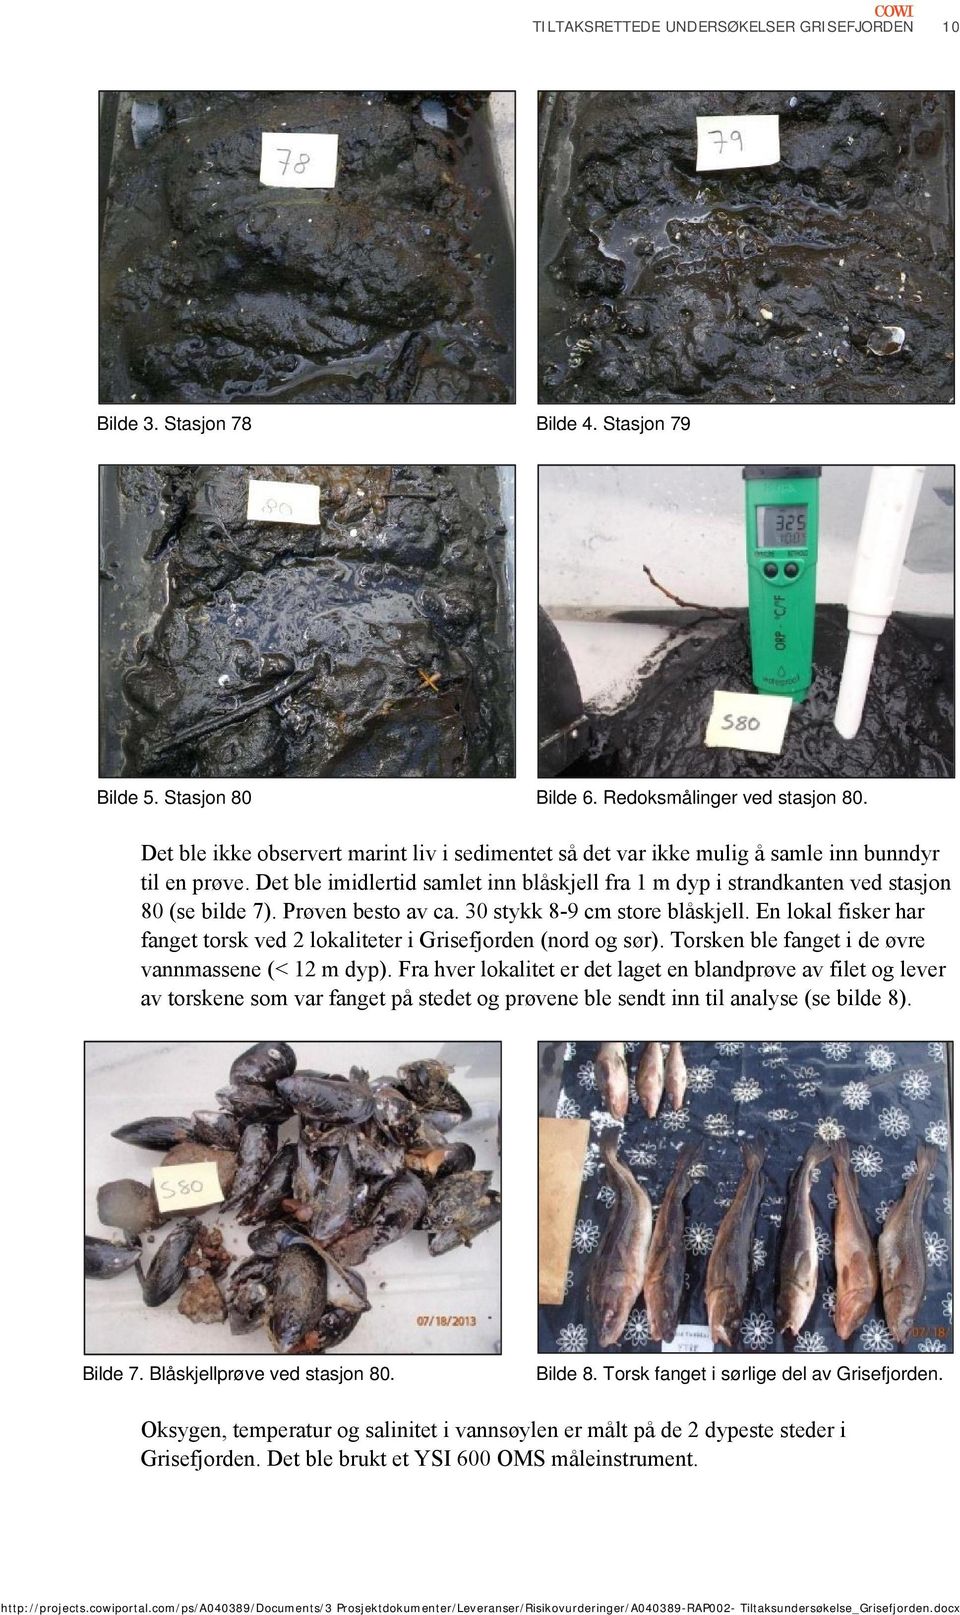 Prøven besto av ca. 30 stykk 8-9 cm store blåskjell. En lokal fisker har fanget torsk ved 2 lokaliteter i Grisefjorden (nord og sør). Torsken ble fanget i de øvre vannmassene (< 12 m dyp).